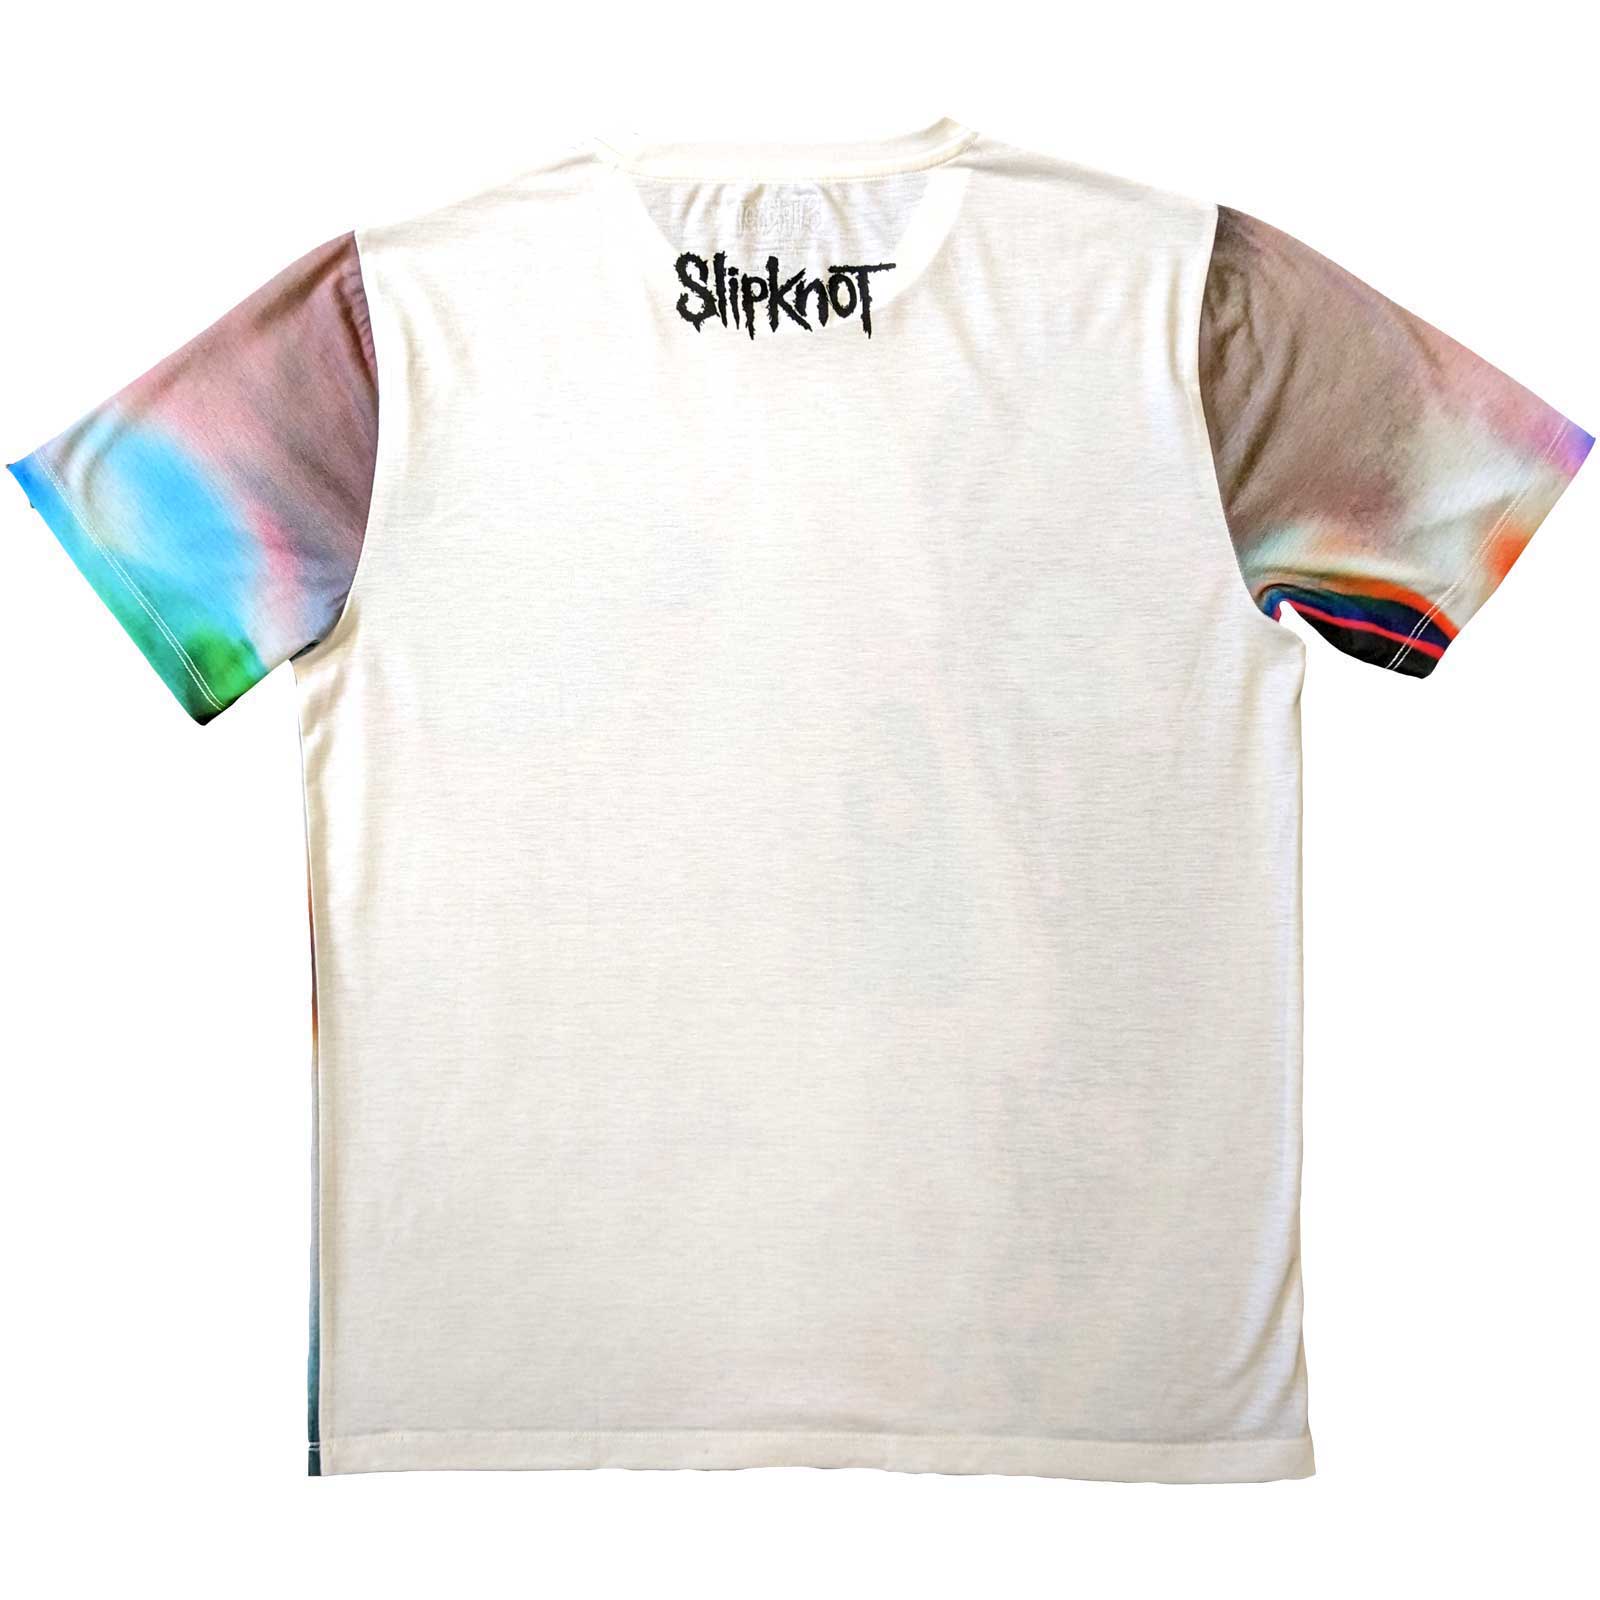 Slipknot T-Shirt - Adderall Face(Back Print) - Unisex Official Licensed Design